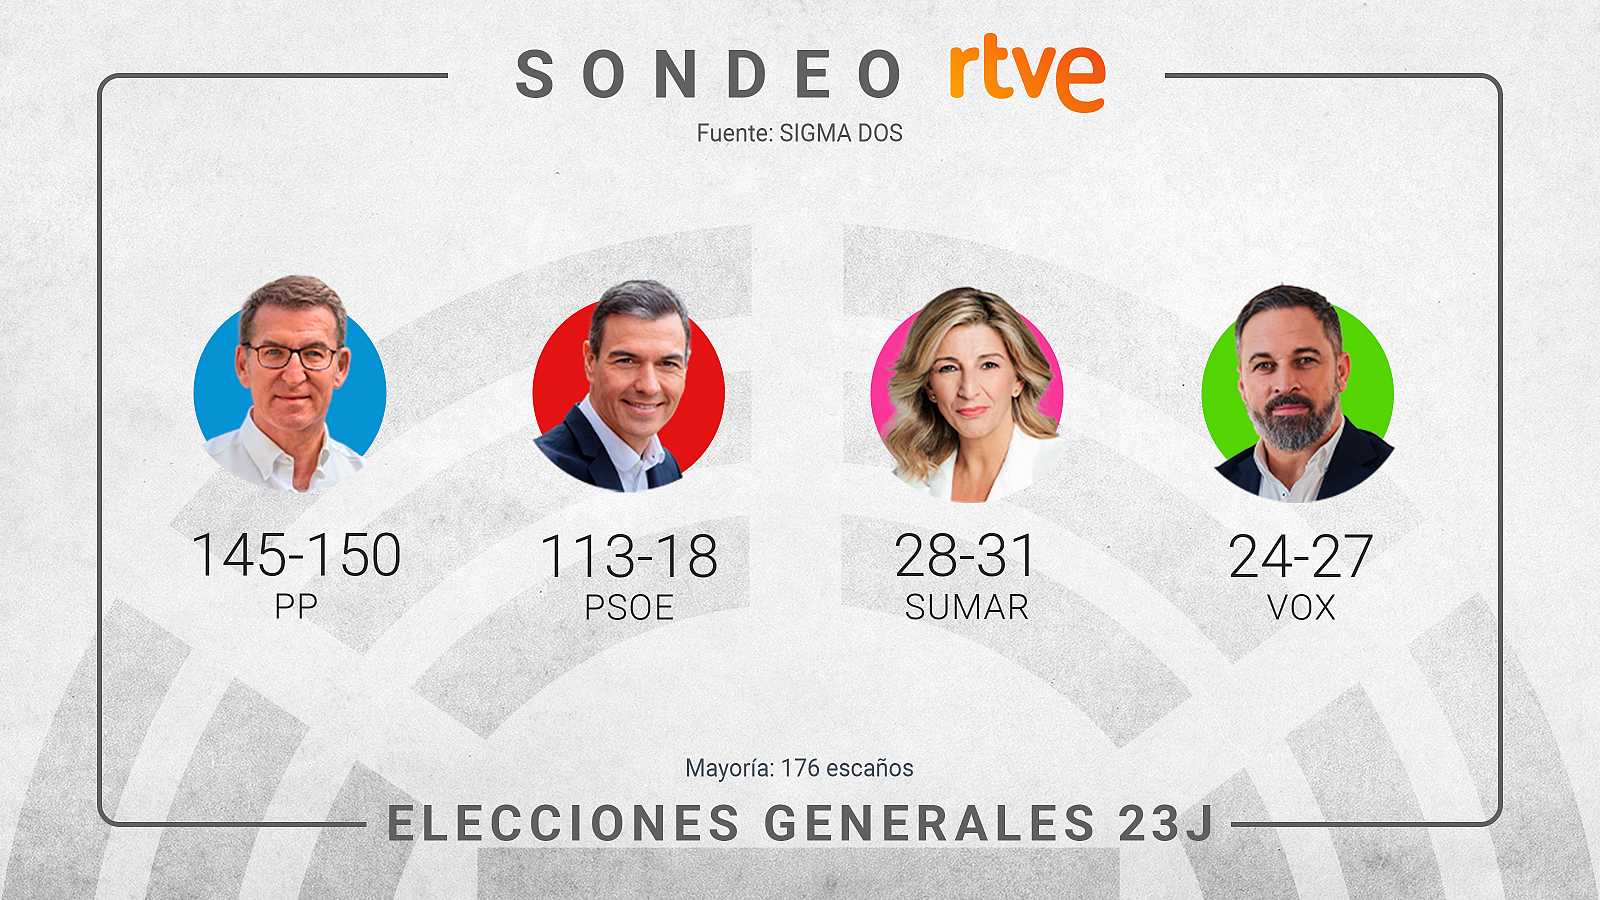 Primeros sondeos aseguran que el Partido Popular obtendrá la victoria en elecciones españolas